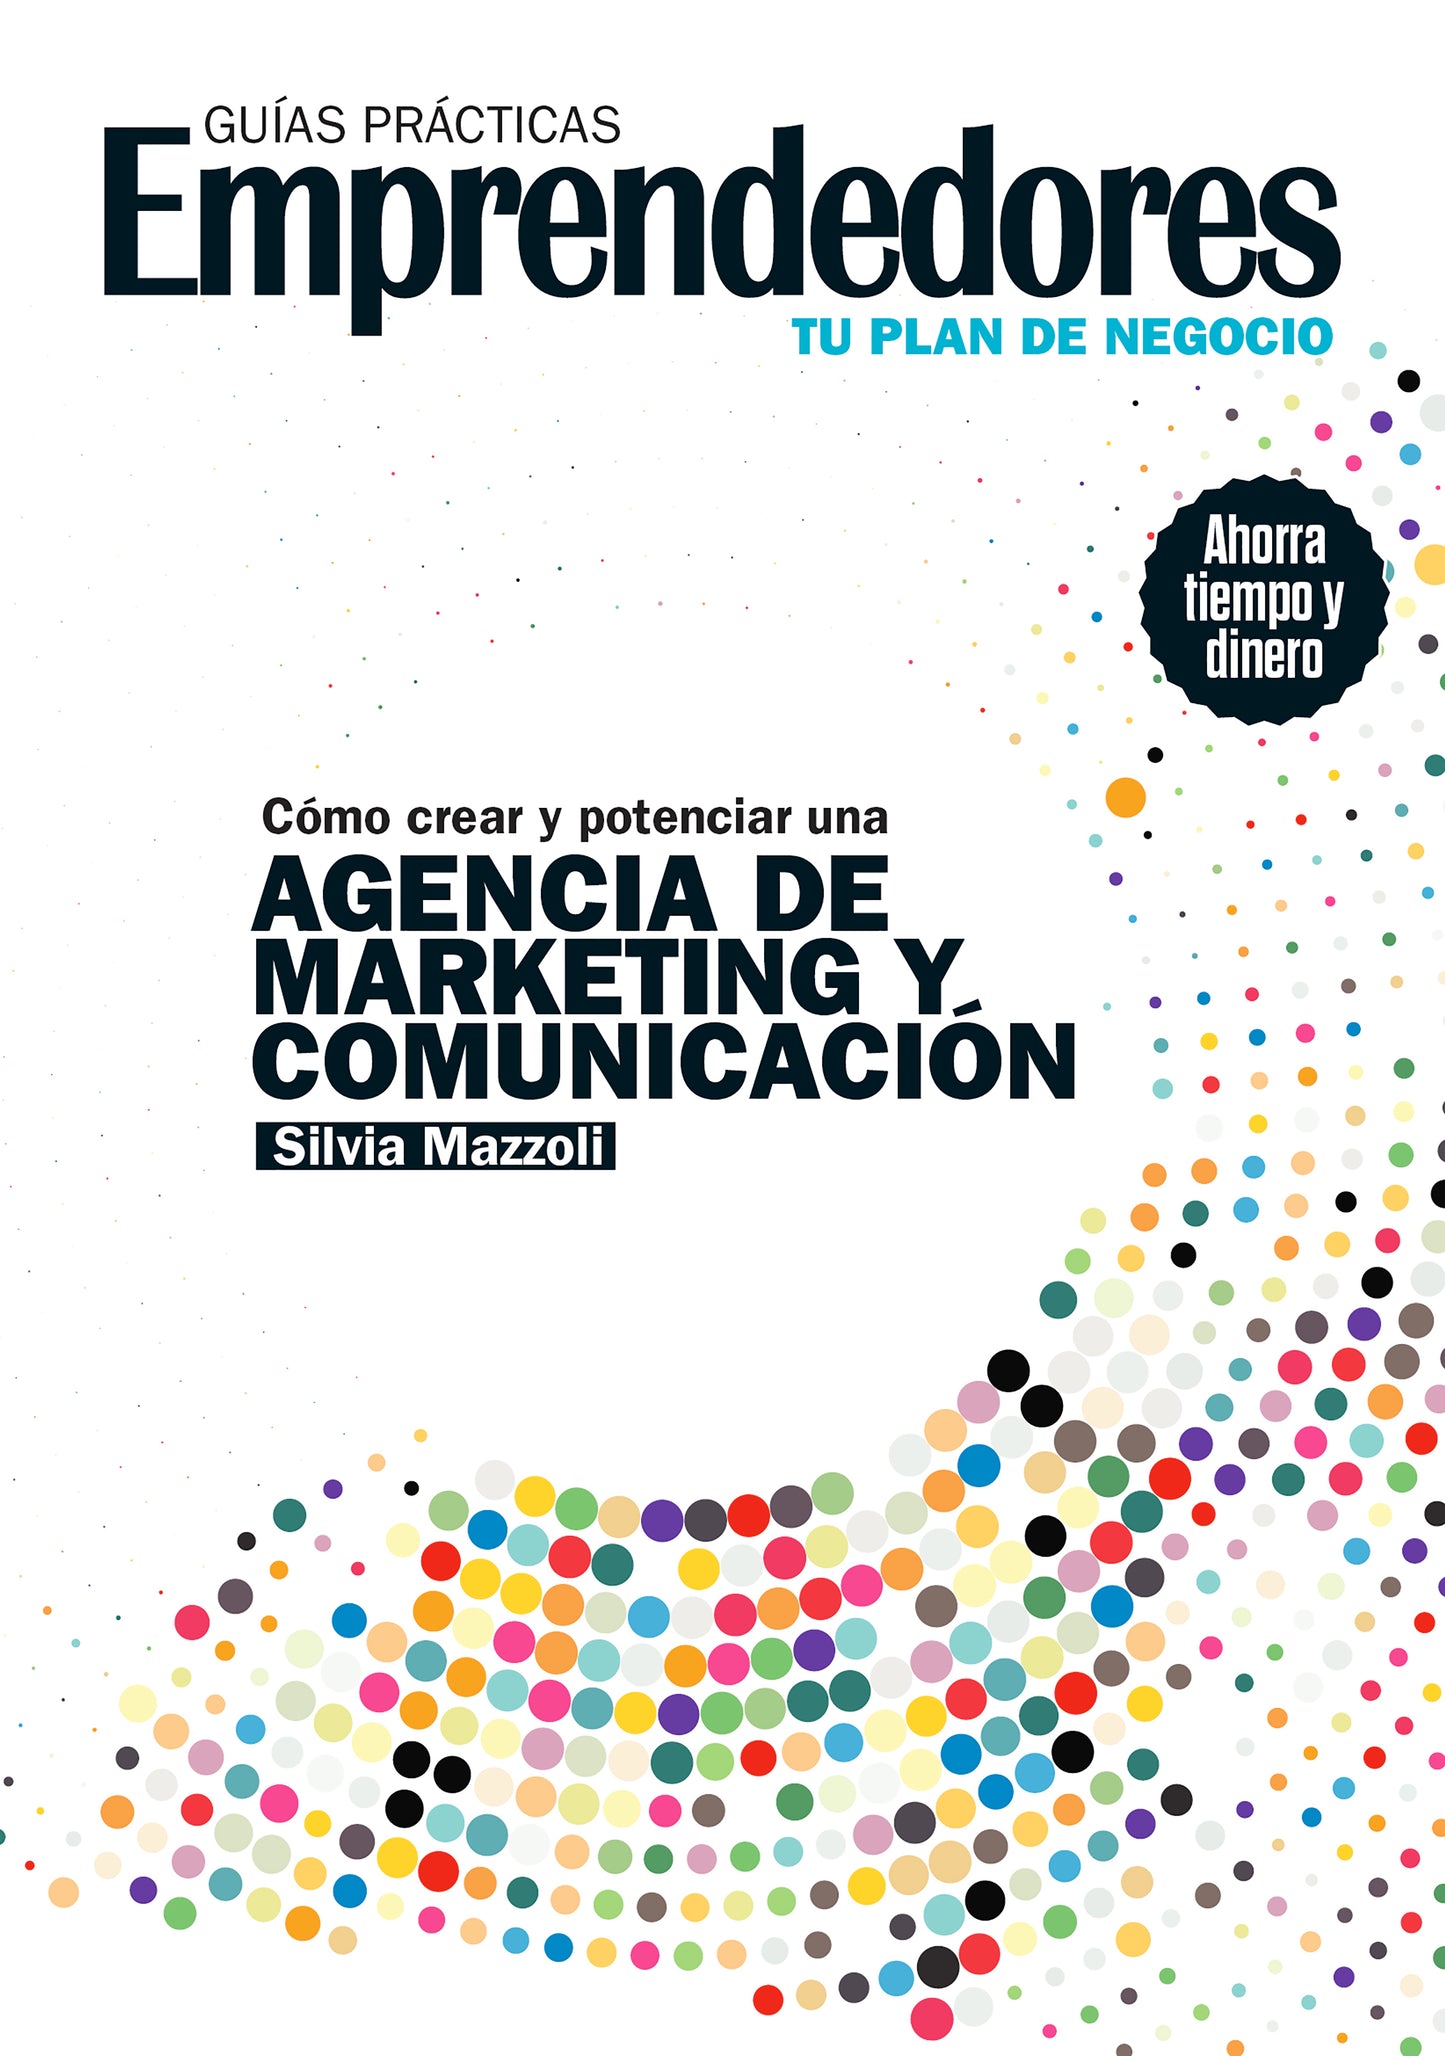 Guía Práctica cómo crear y potenciar una agencia de marketing y comunicación